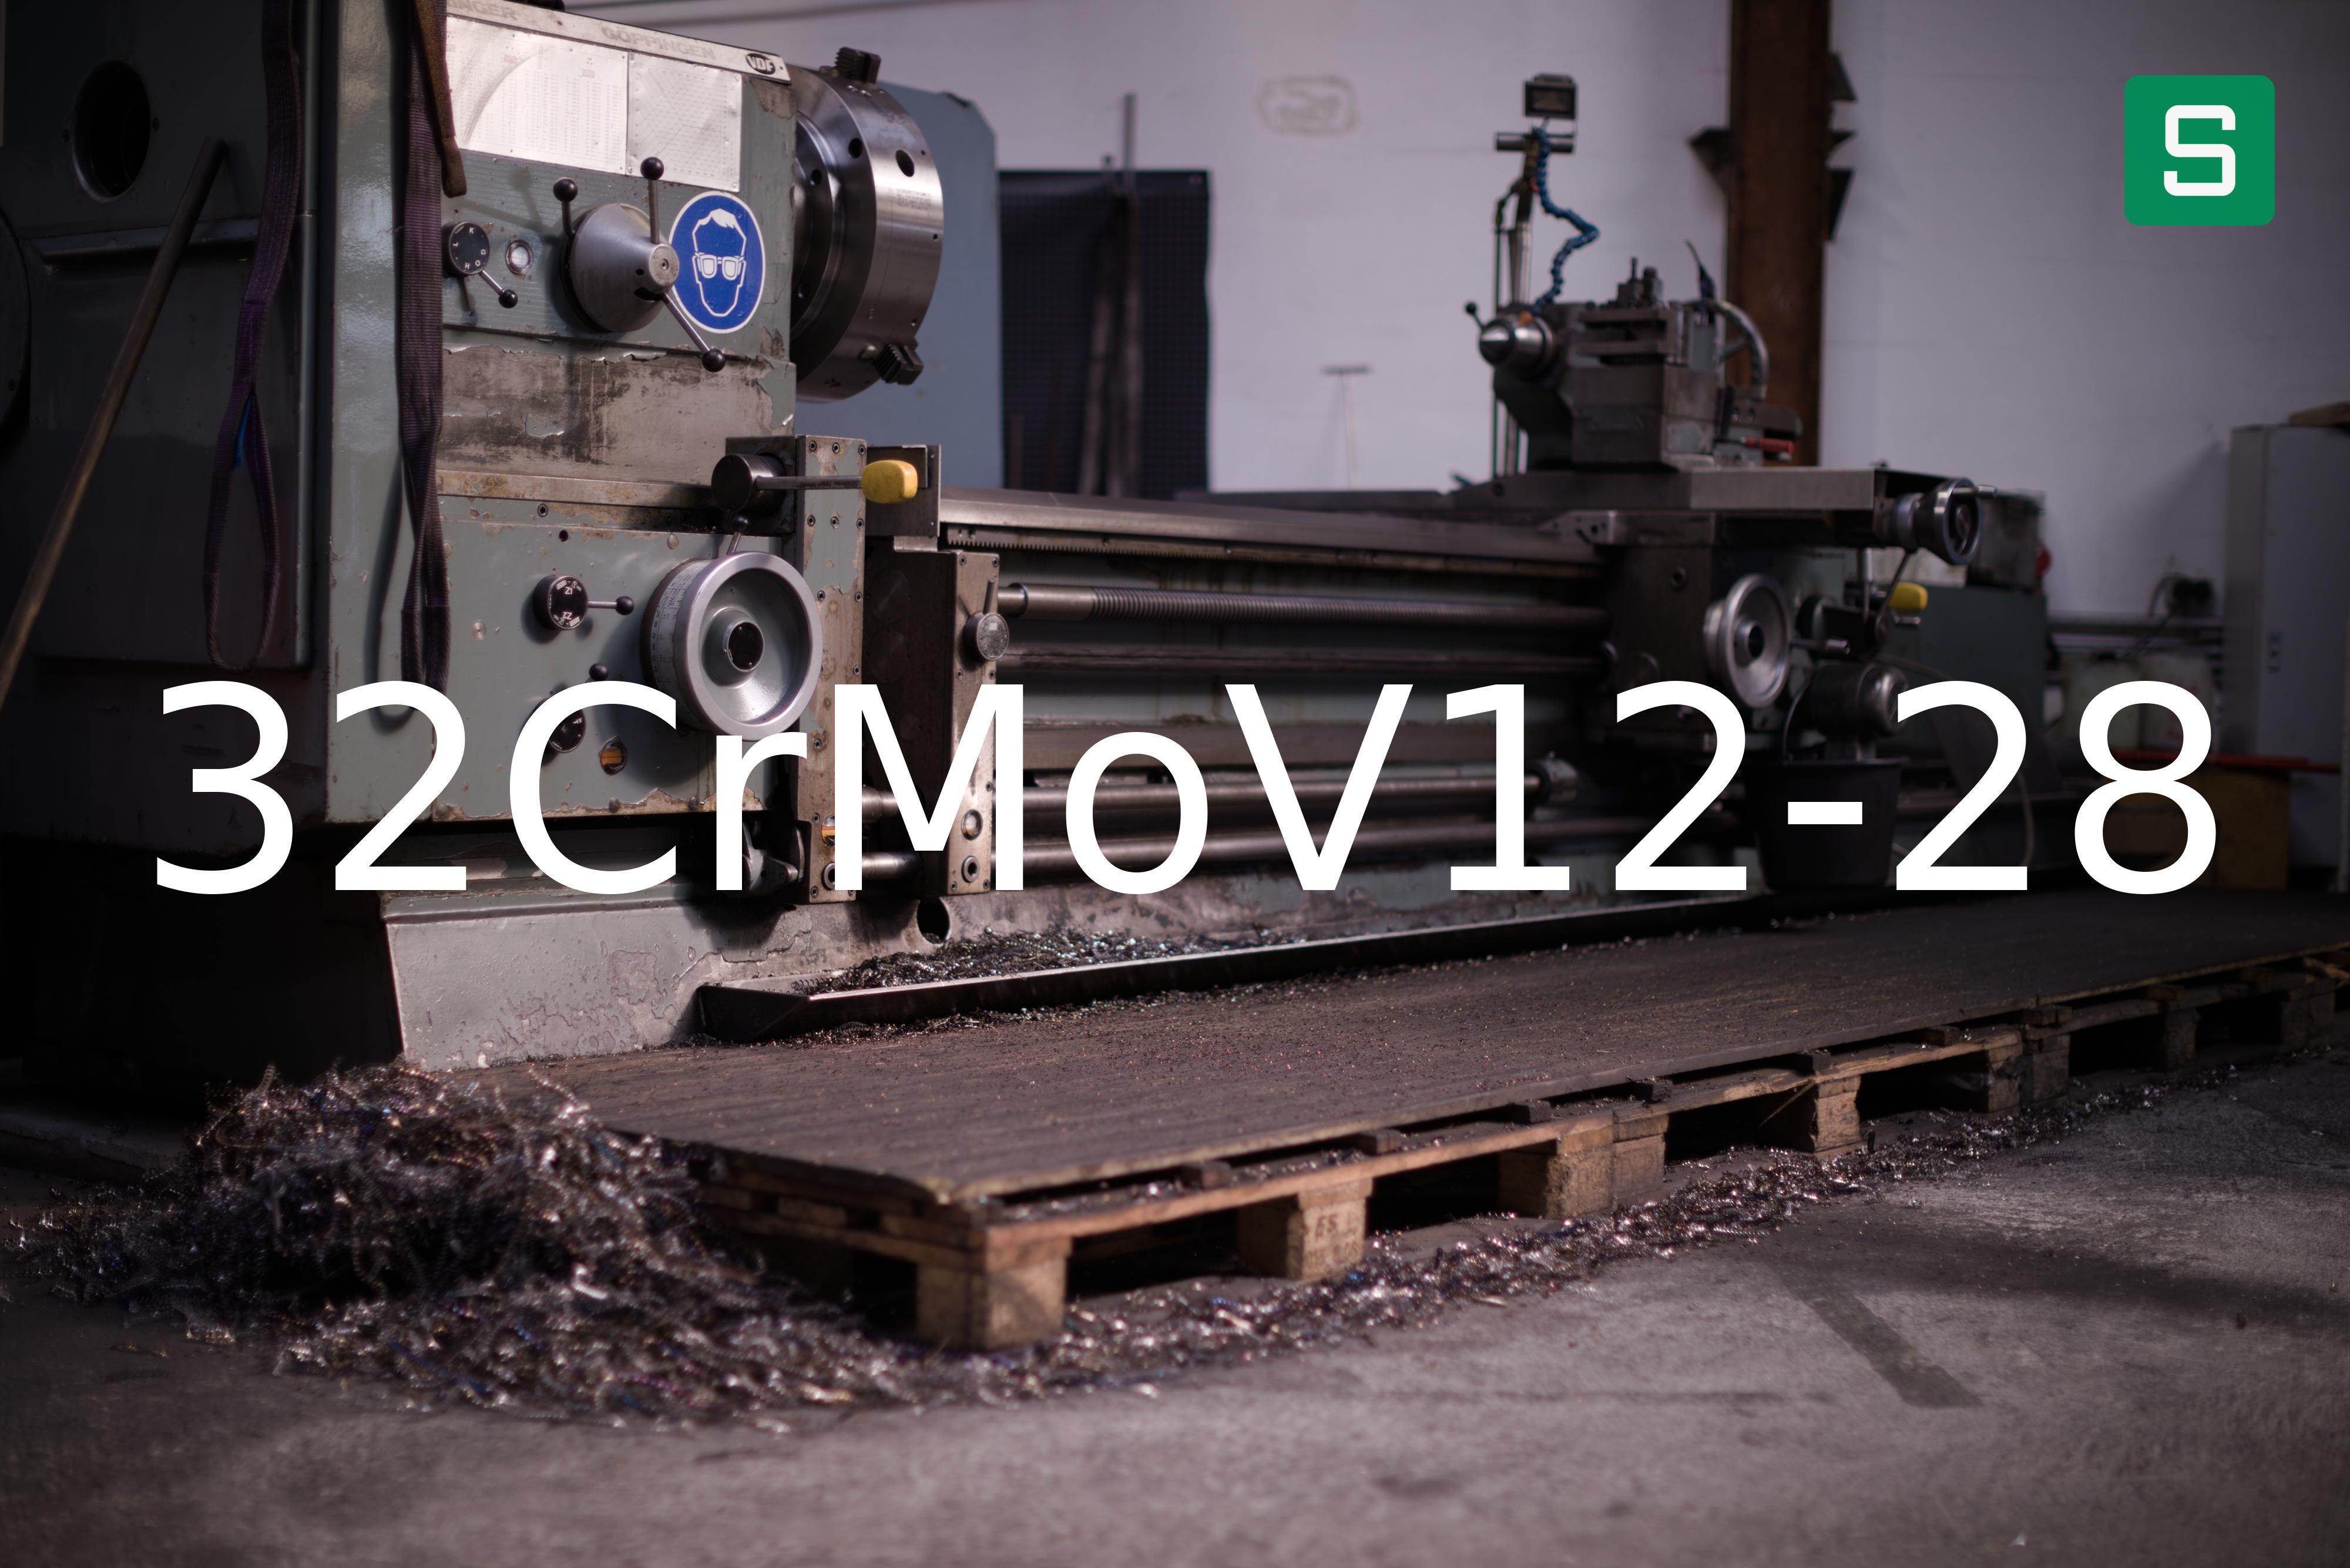 Steel Material: 32CrMoV12-28